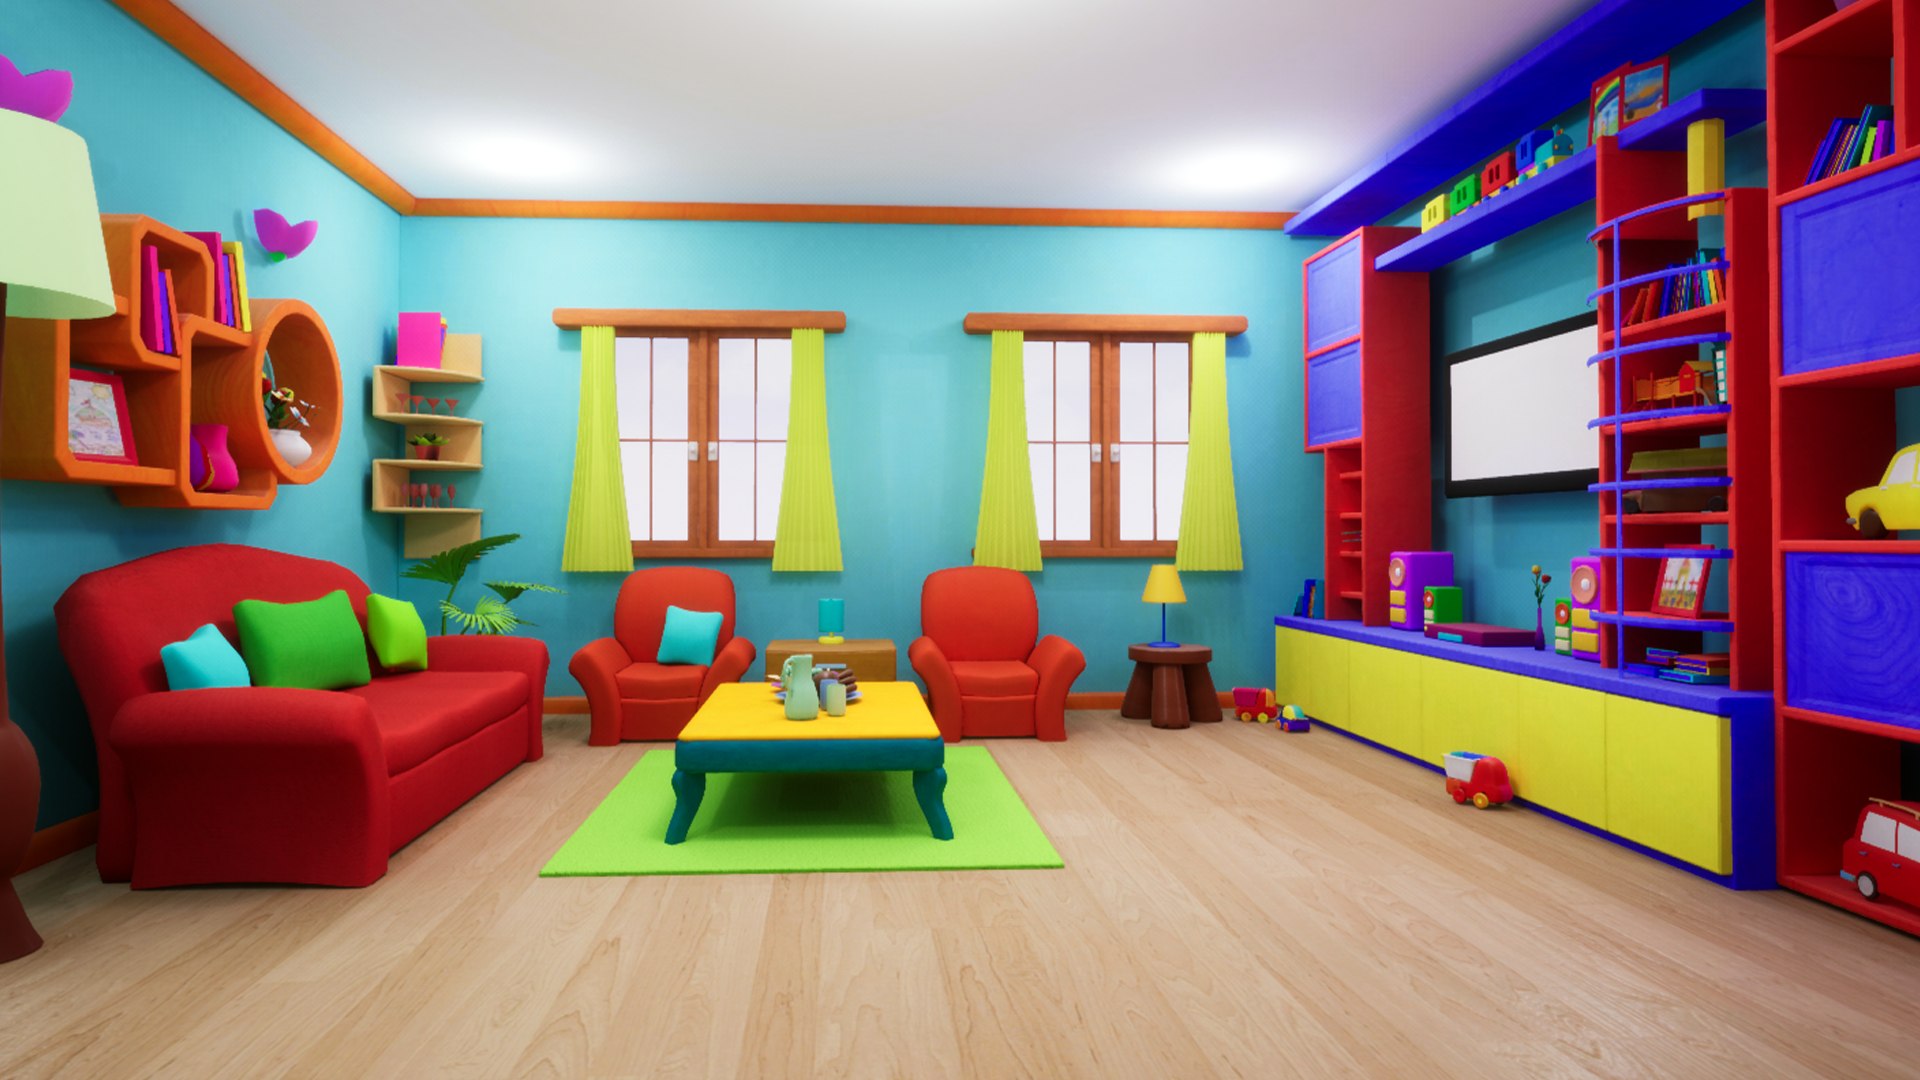 Livingroom cartoon - asset 3D - TurboSquid 1388890